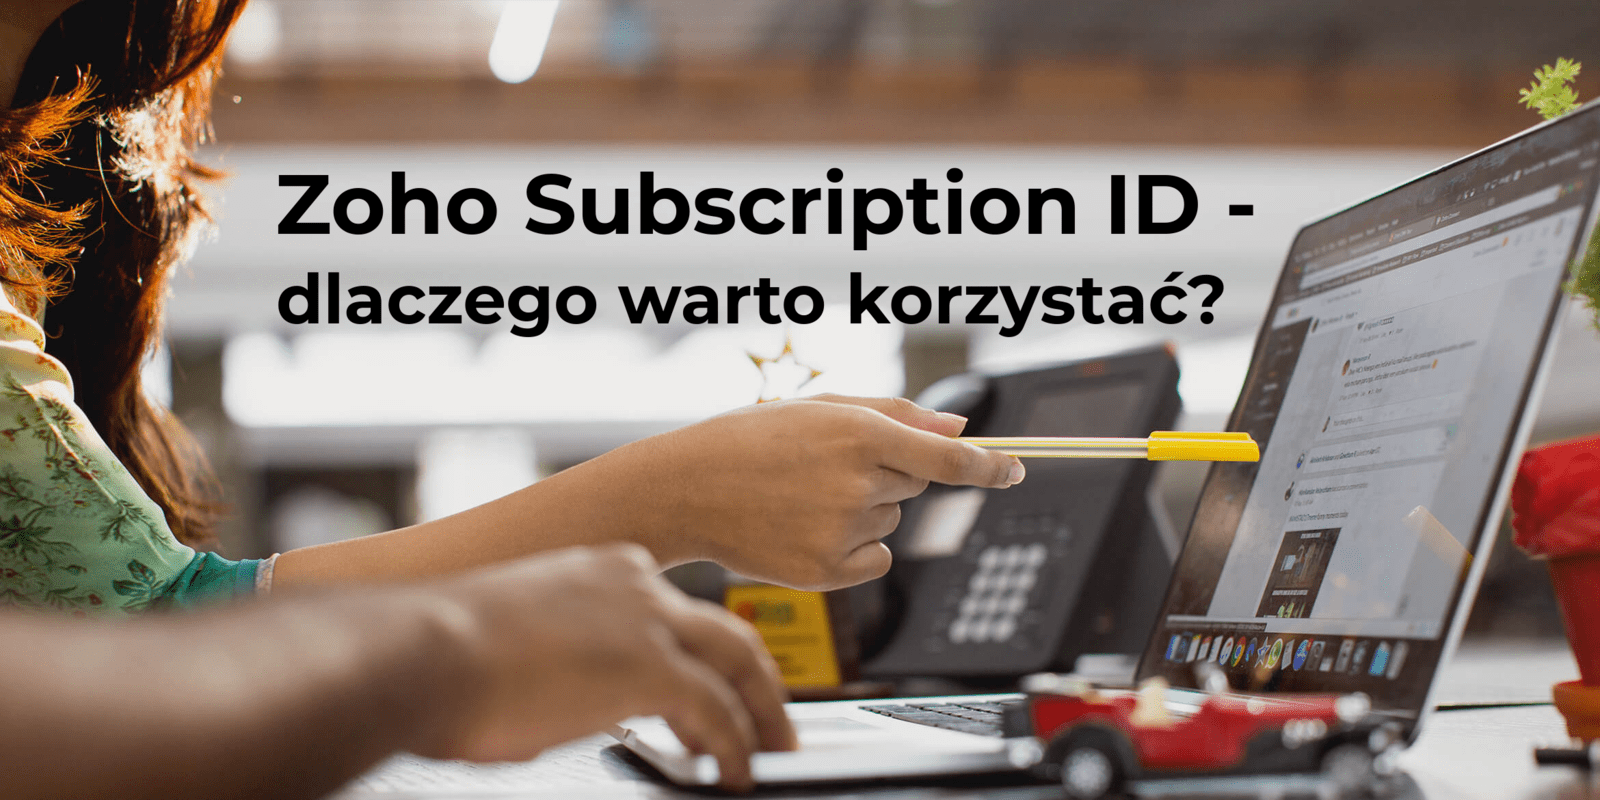 Zoho Subscription ID - wymagany do skorzystania z opieki serwisowej Z Partner